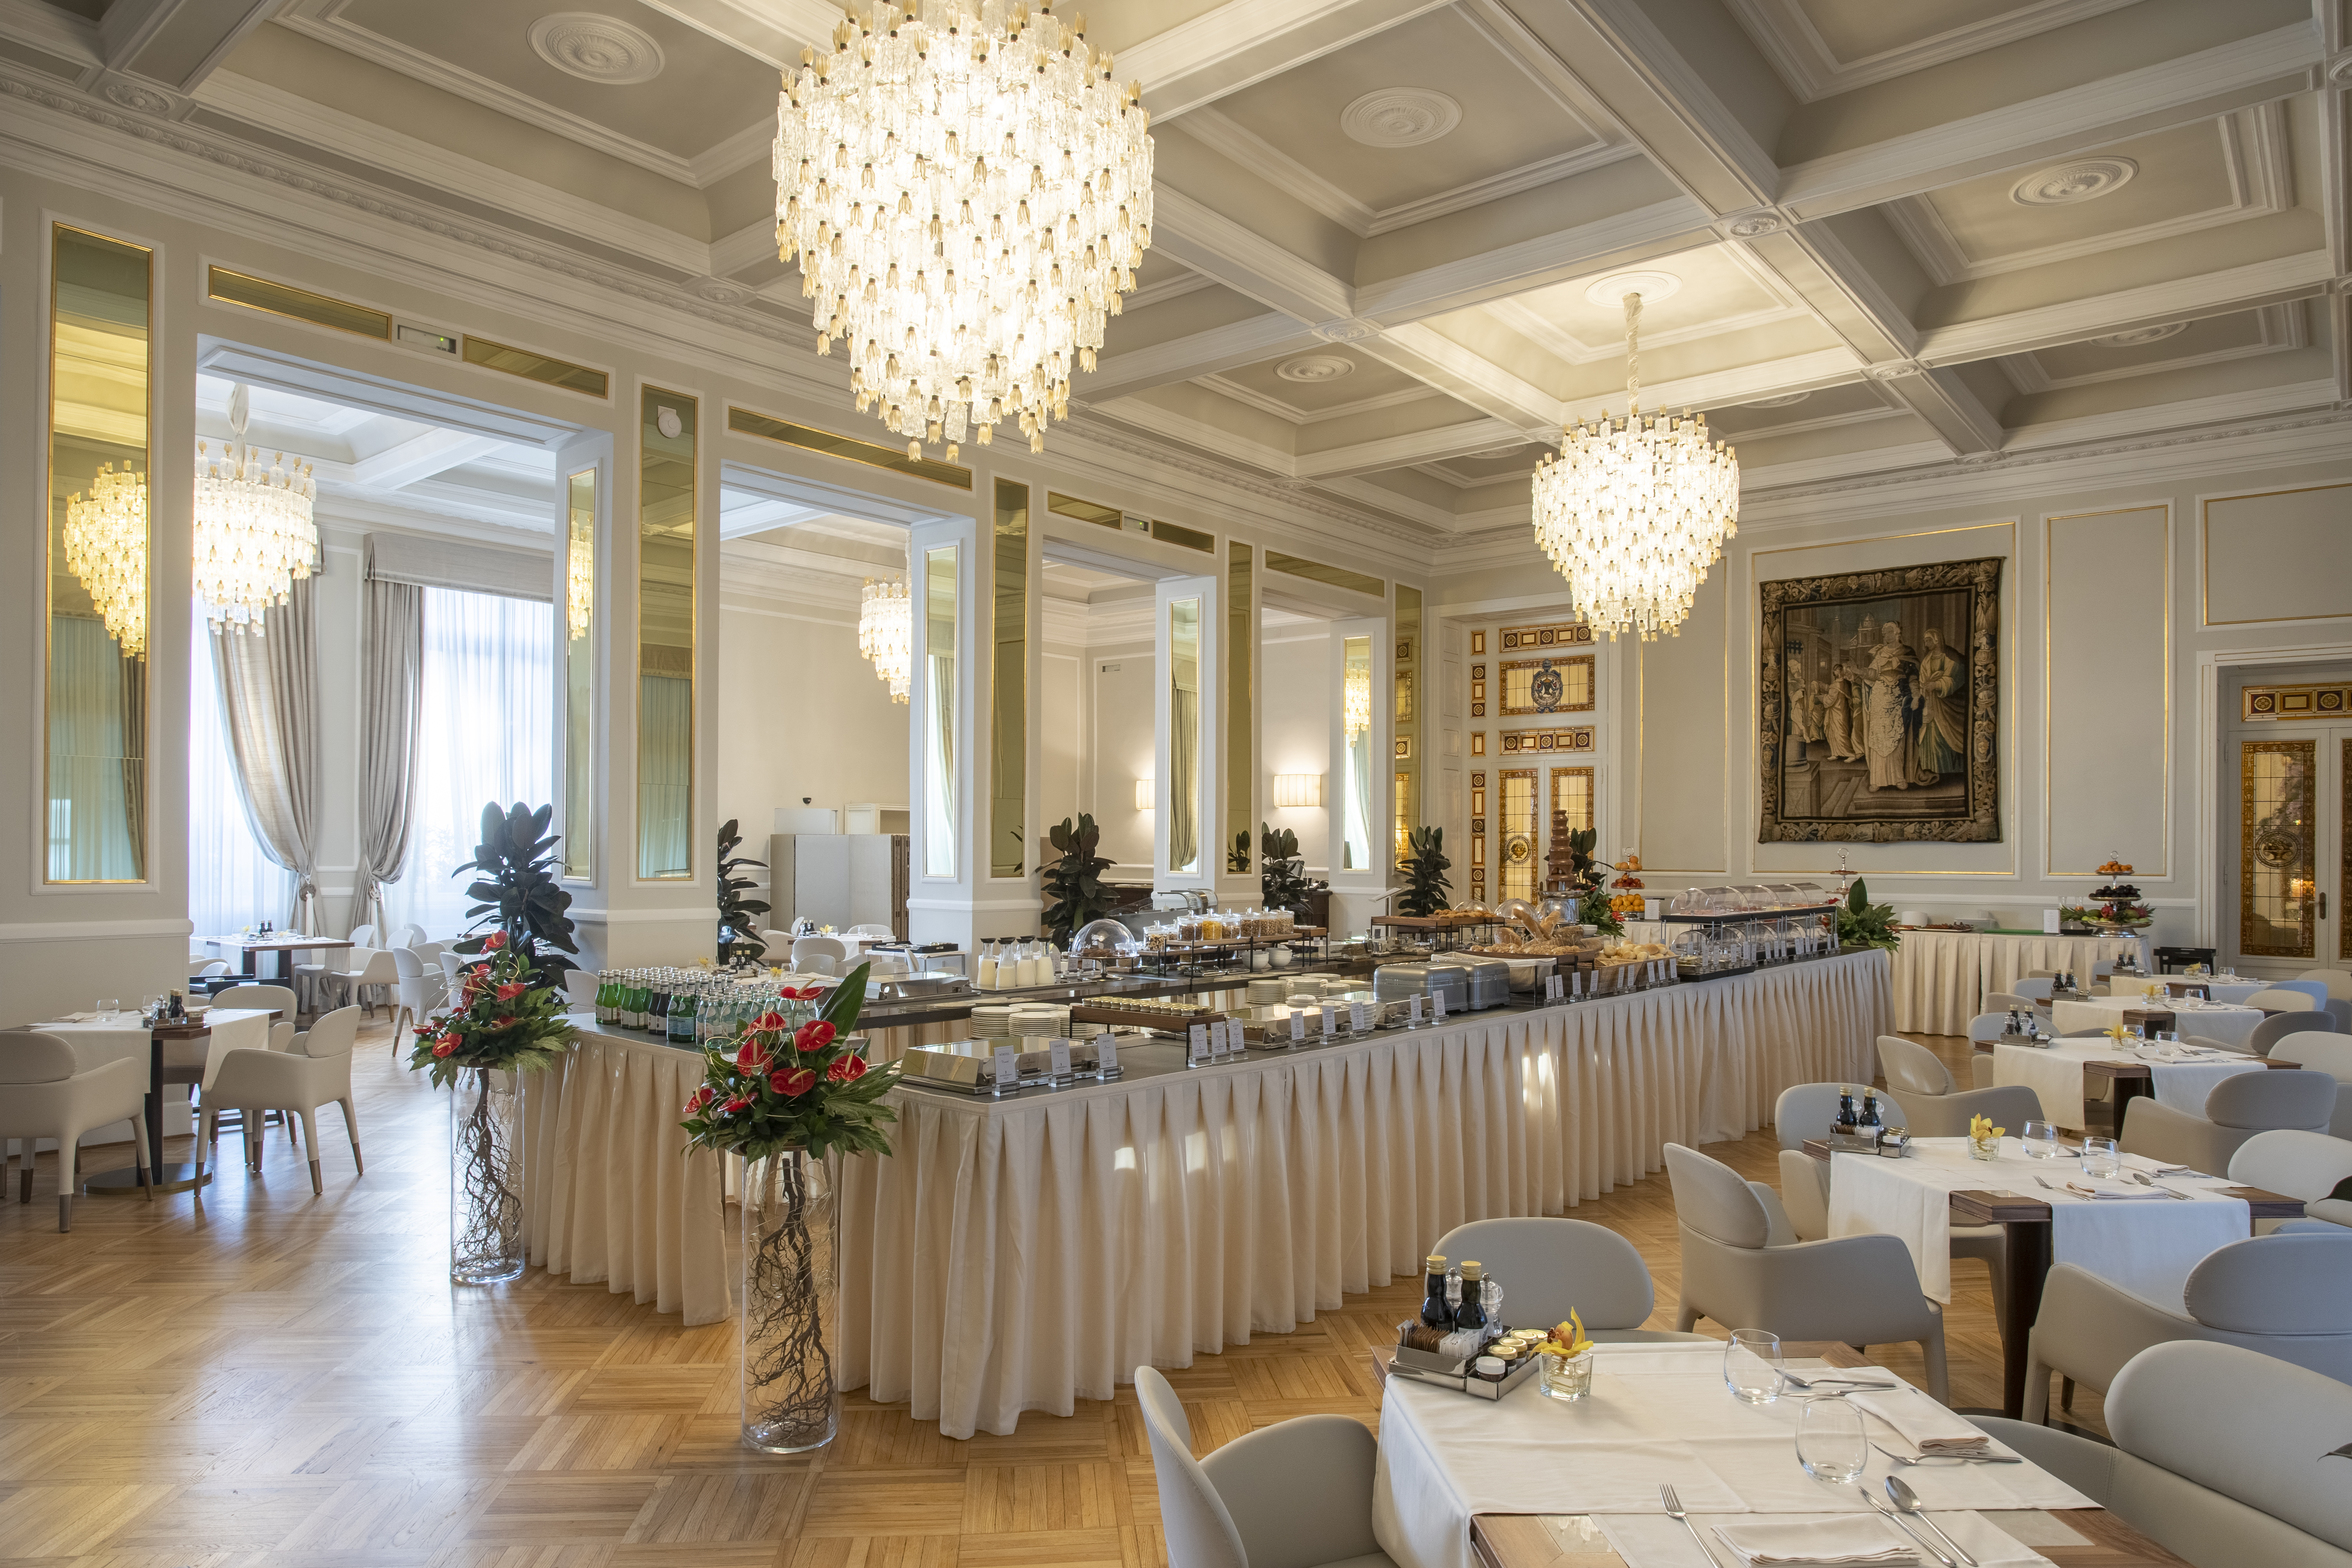 Sala colazioni - Grand Hotel Principe del Piemonte.jpg